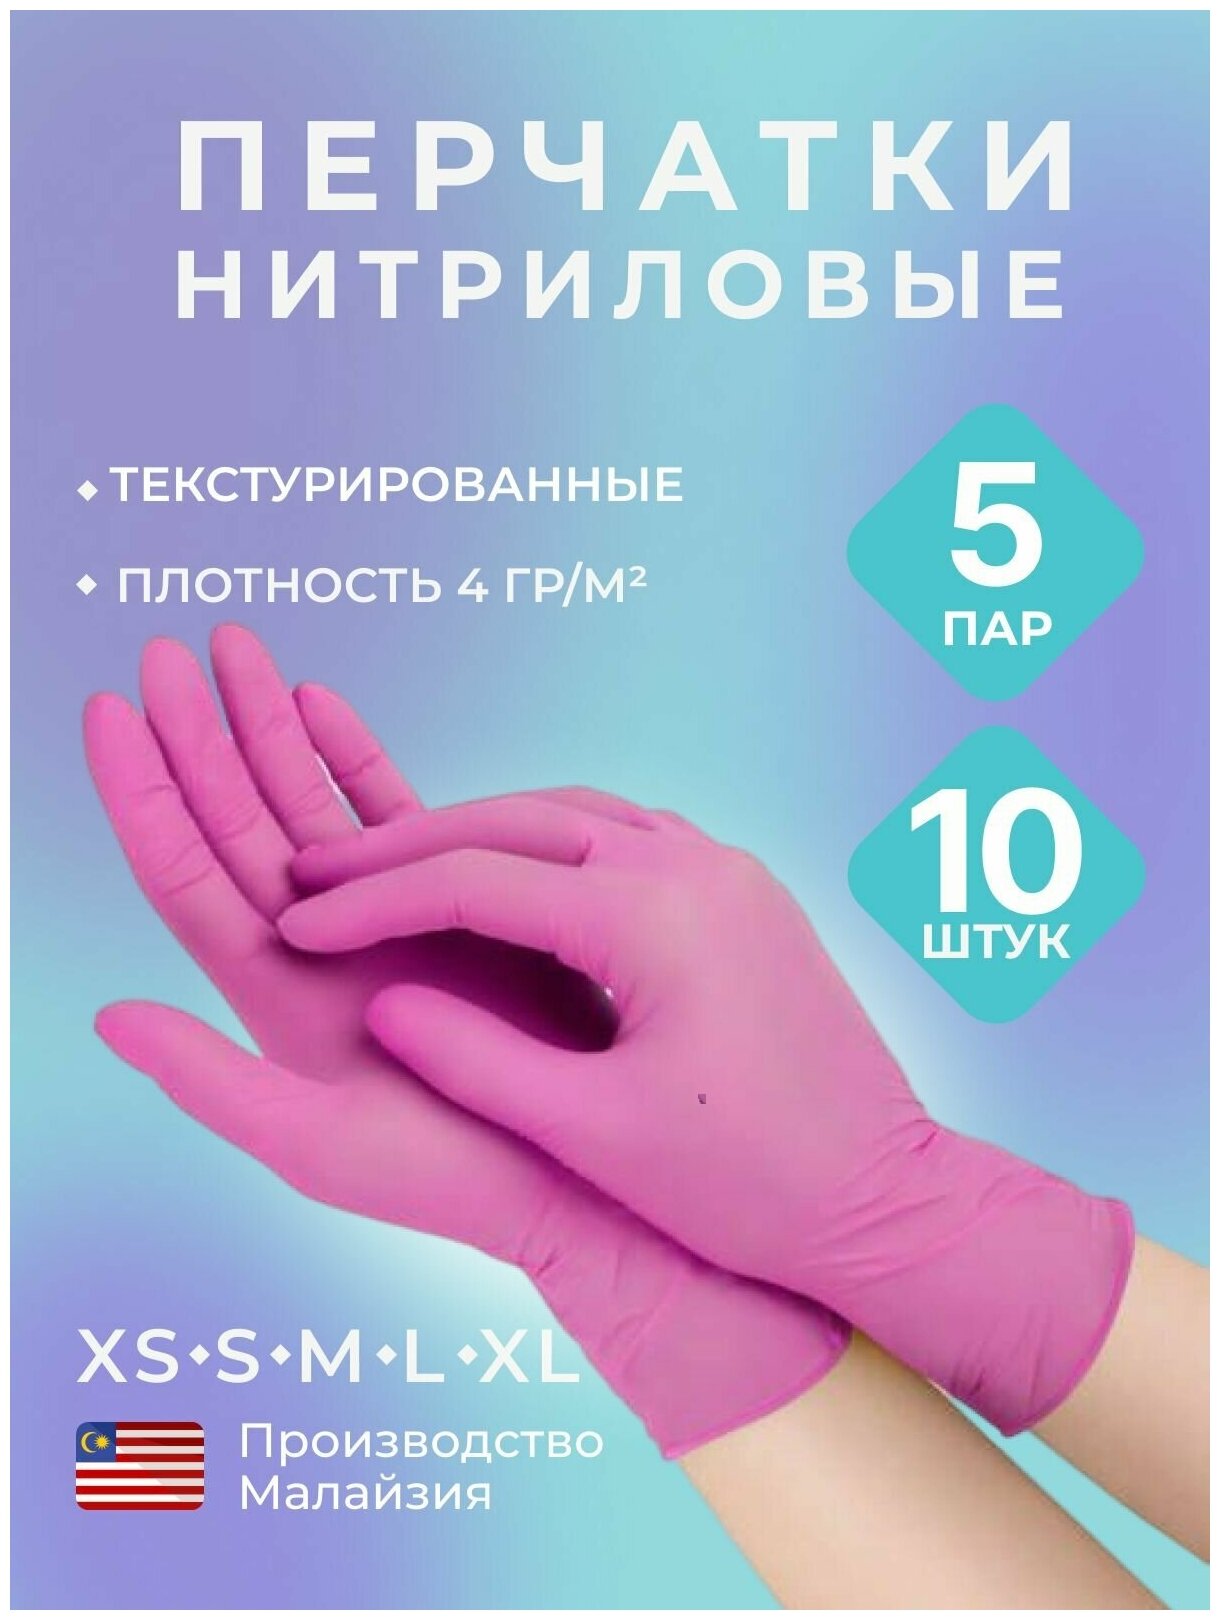 Перчатки нитриловые, одноразовые, текстурированные на пальцах, розовый, 10 шт, 5 пар, р-р S